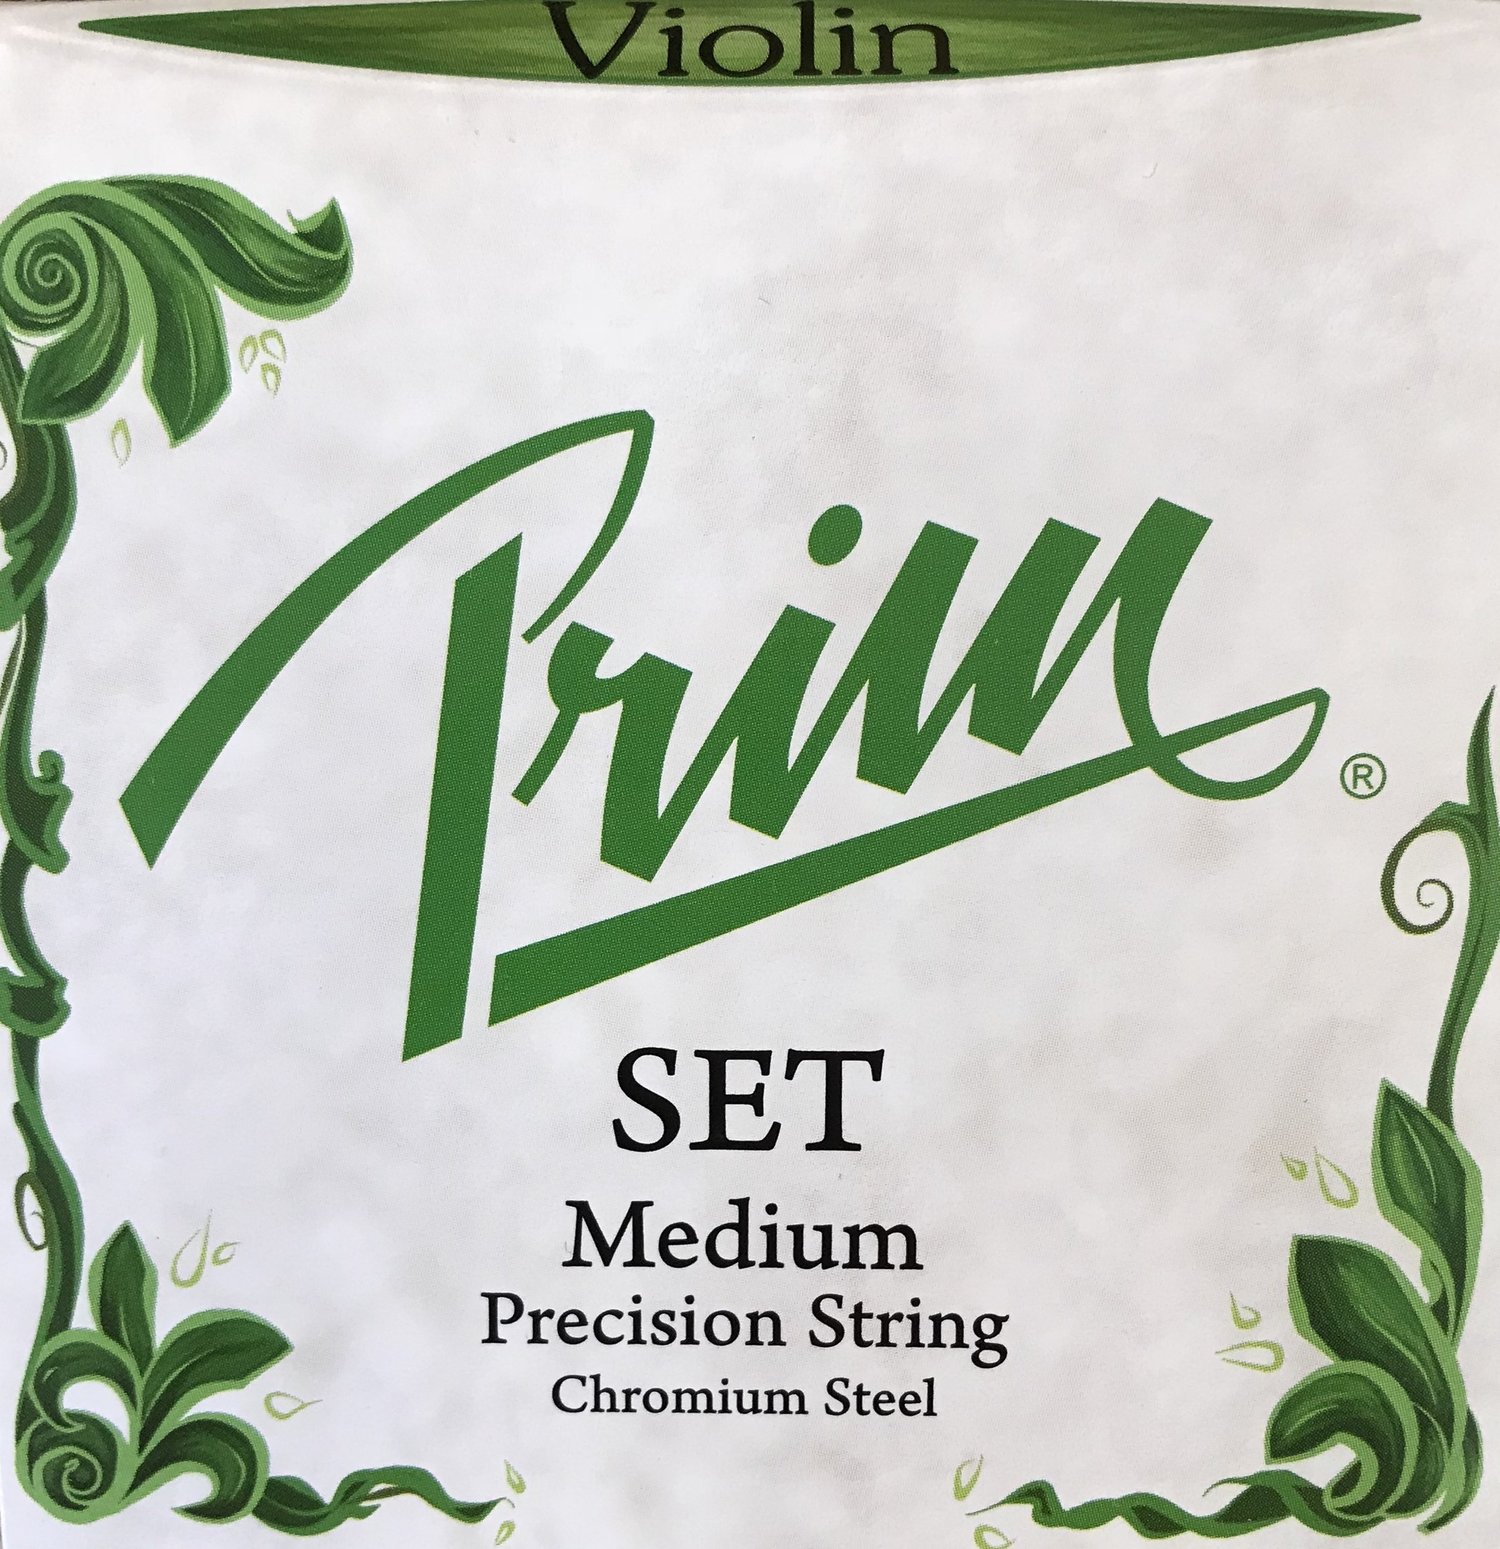 Sparsommelig Sindsro mental Prim Violin Set — Tulsa Strings Violin Shop